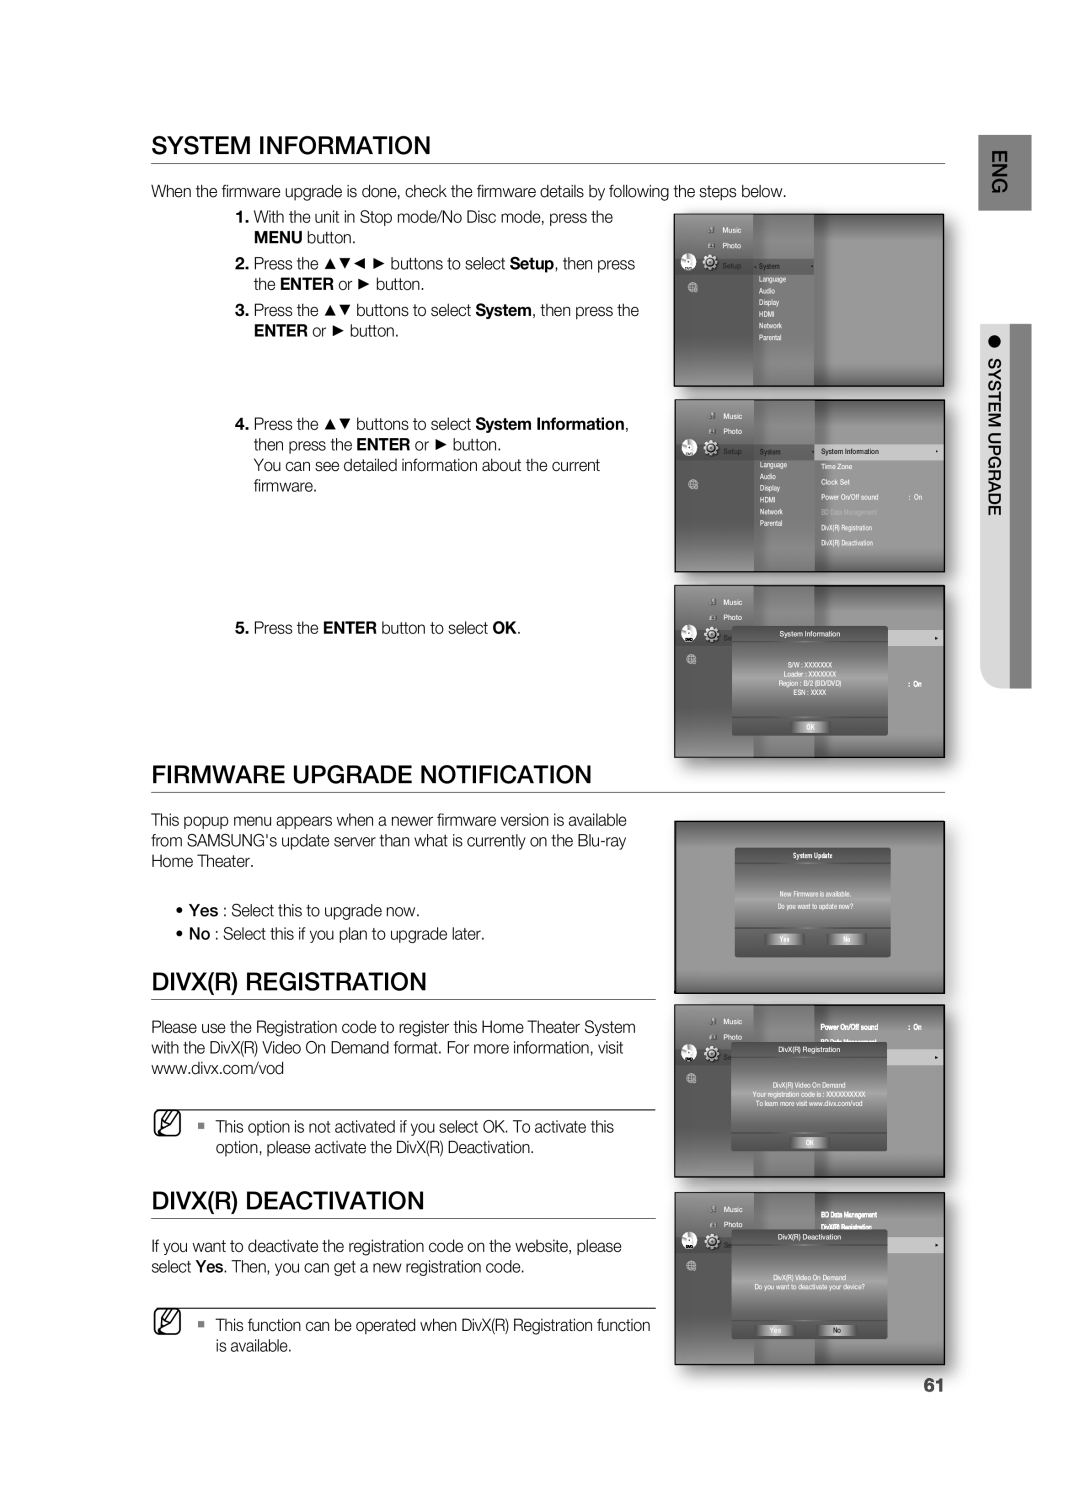 Samsung HT-BD3252 user manual System Information, Firmware Upgrade Notification, Divxr Registration, Divxr Deactivation 